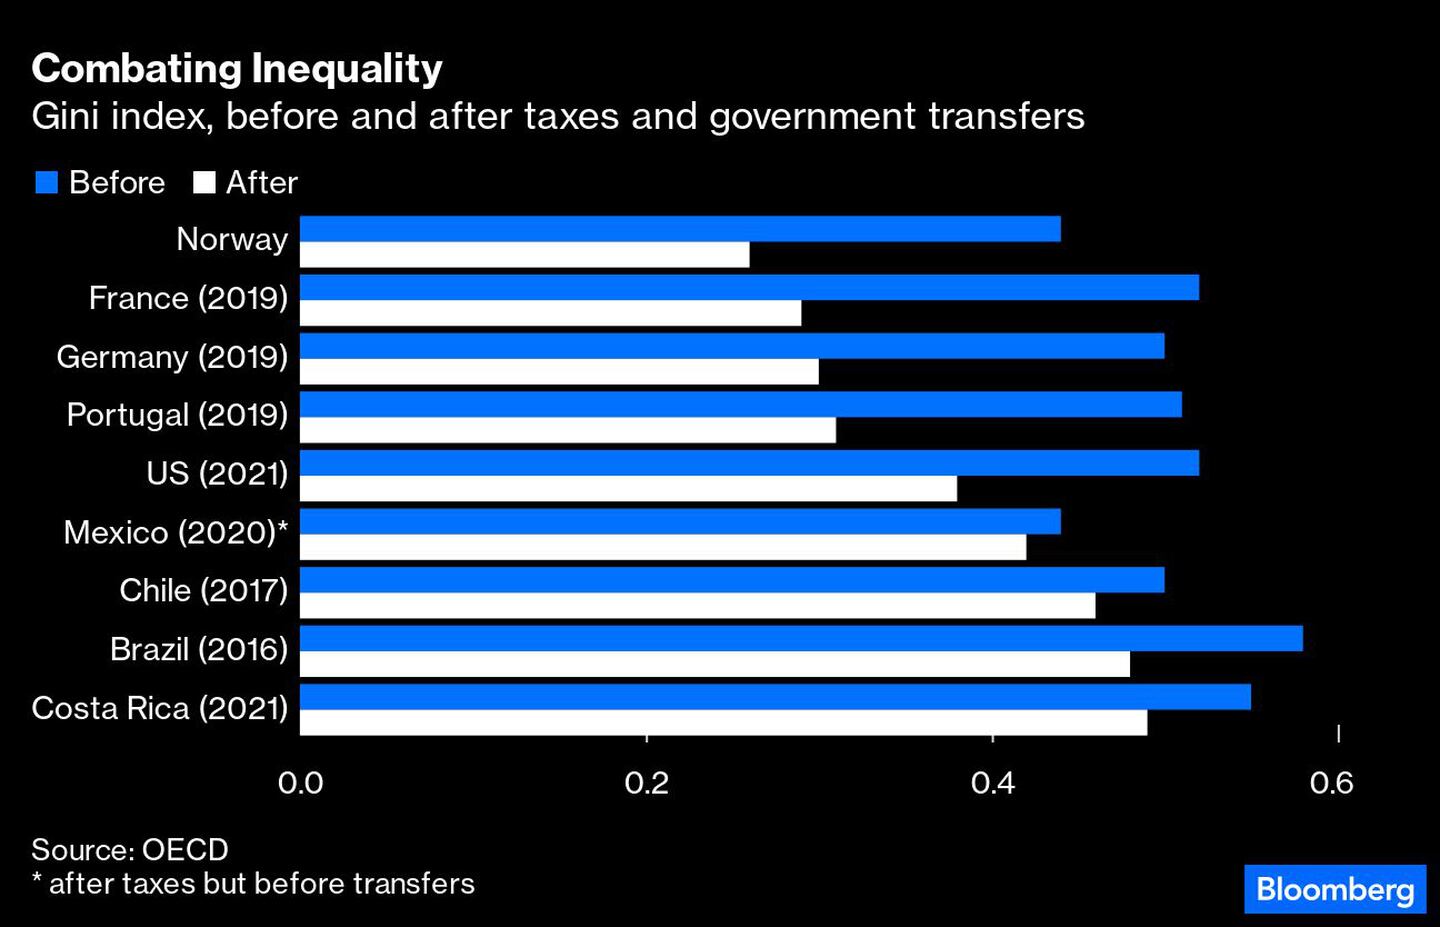 El índice Gini antes y después de impuestos y transferencias gubernamentalsdfd